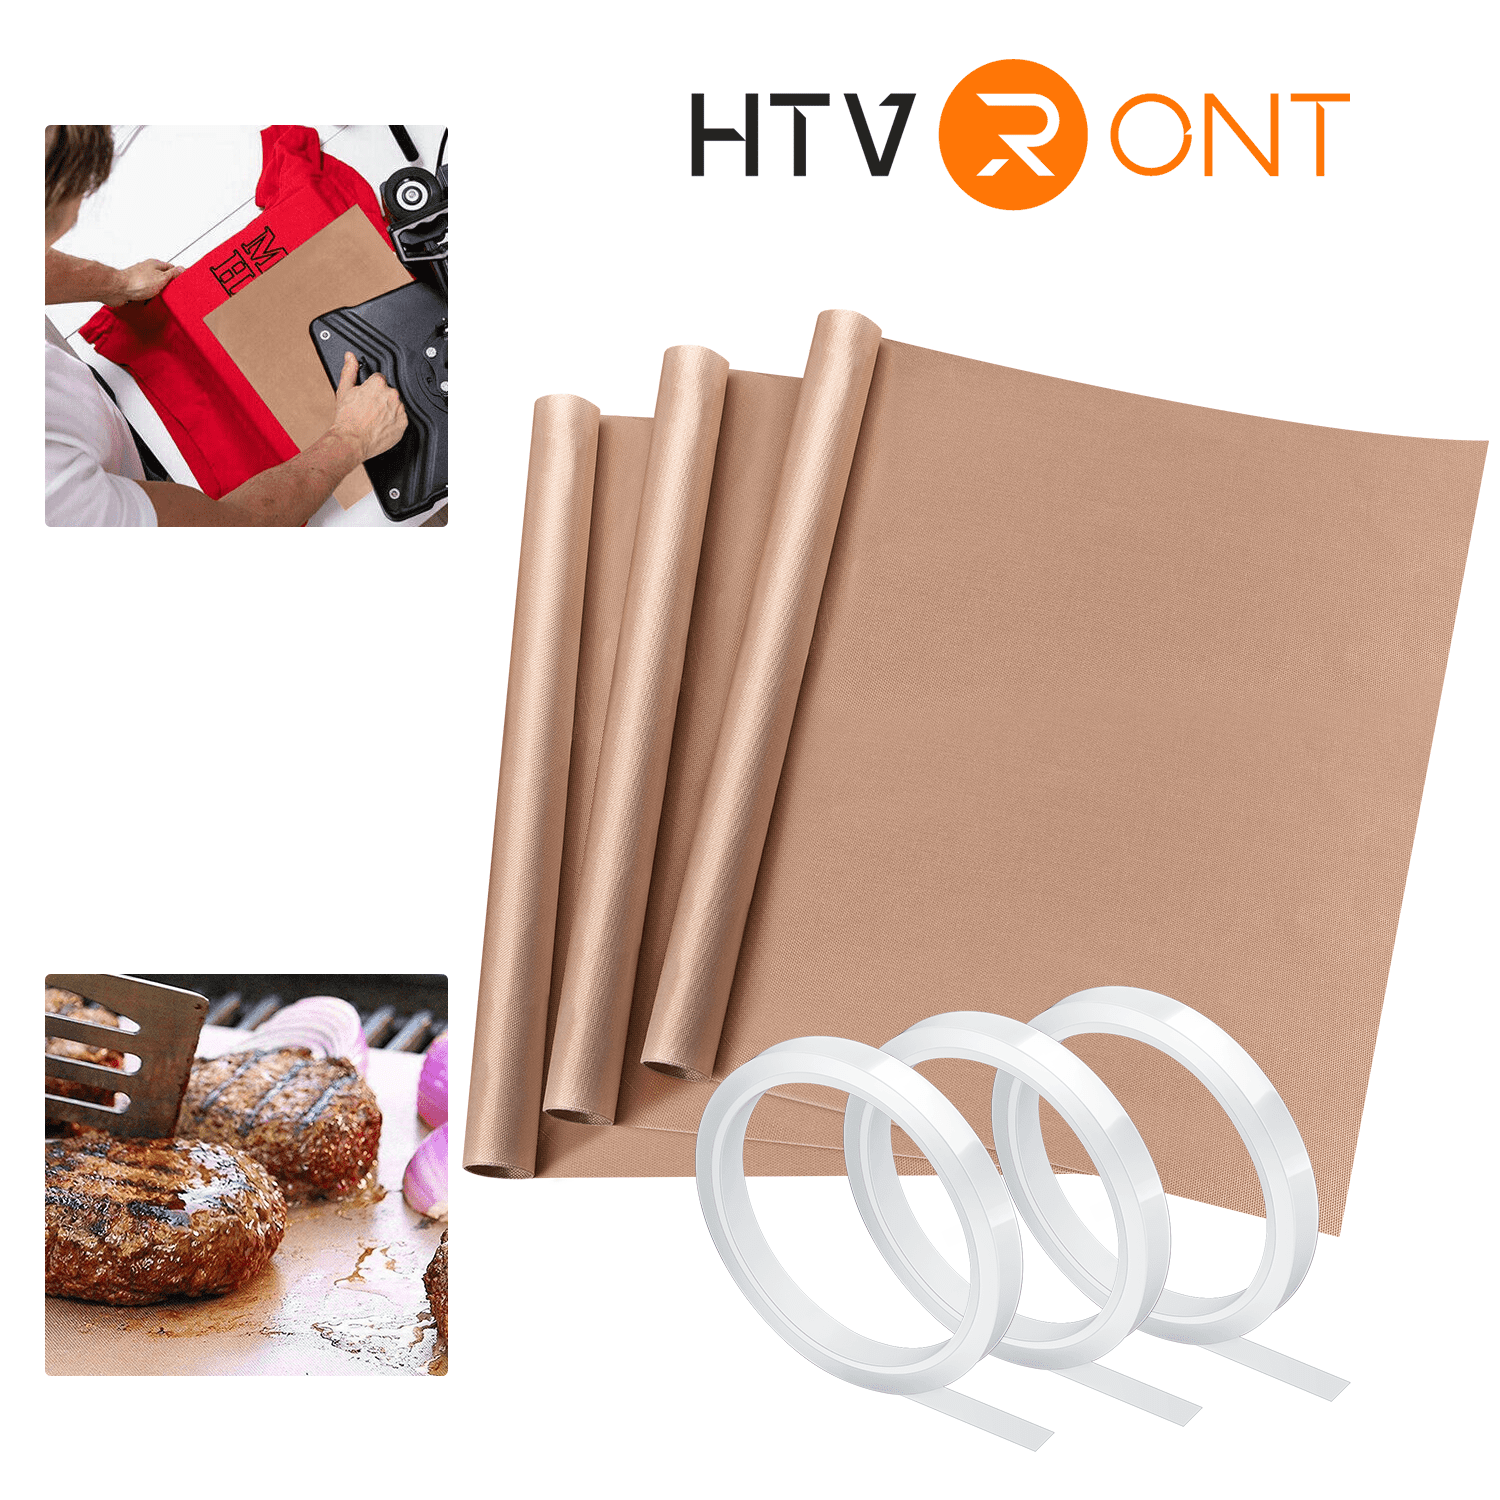 HTVRONT 3 Pack Teflon Sheets for Heat Press Reusable, 16 x 20 Non-Stick  Teflon Paper, Heat Resistant Teflon Sheet, Washable PTFE Teflon Sheet for  Craft Project